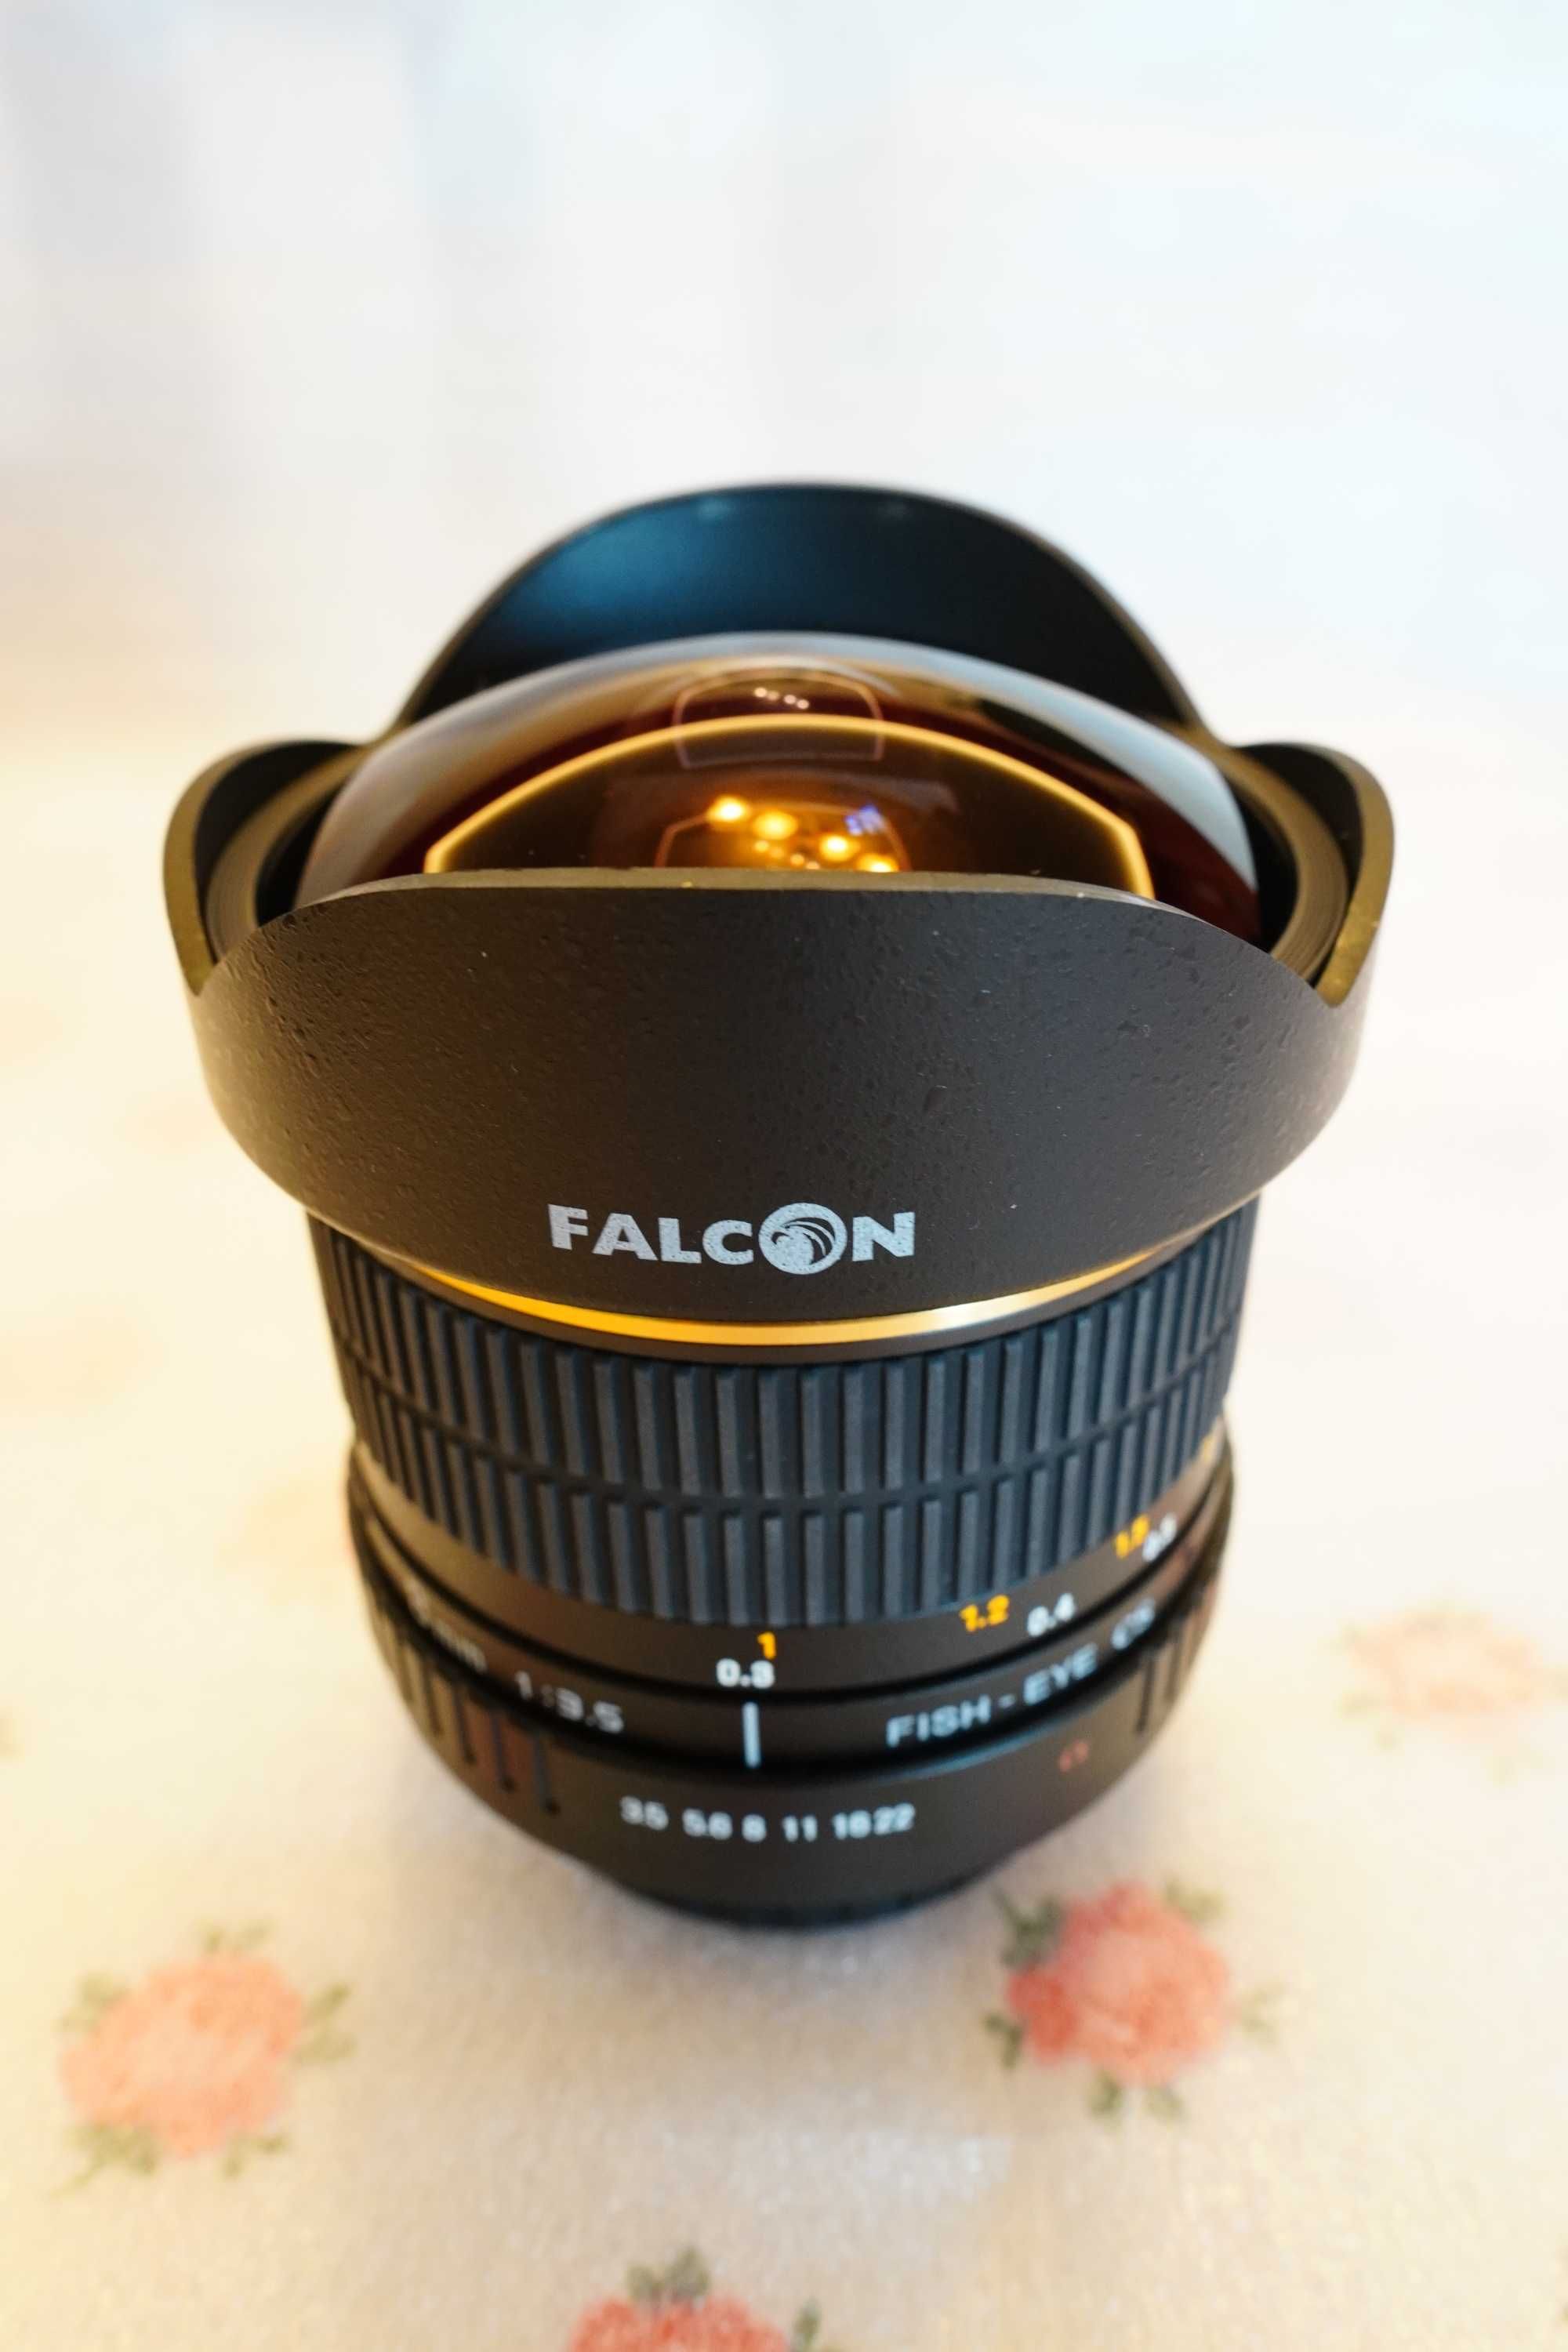 Fish eye Falcon ( Samyang) 8 mm  f3.5 - Sony A / Minolta jak nowy